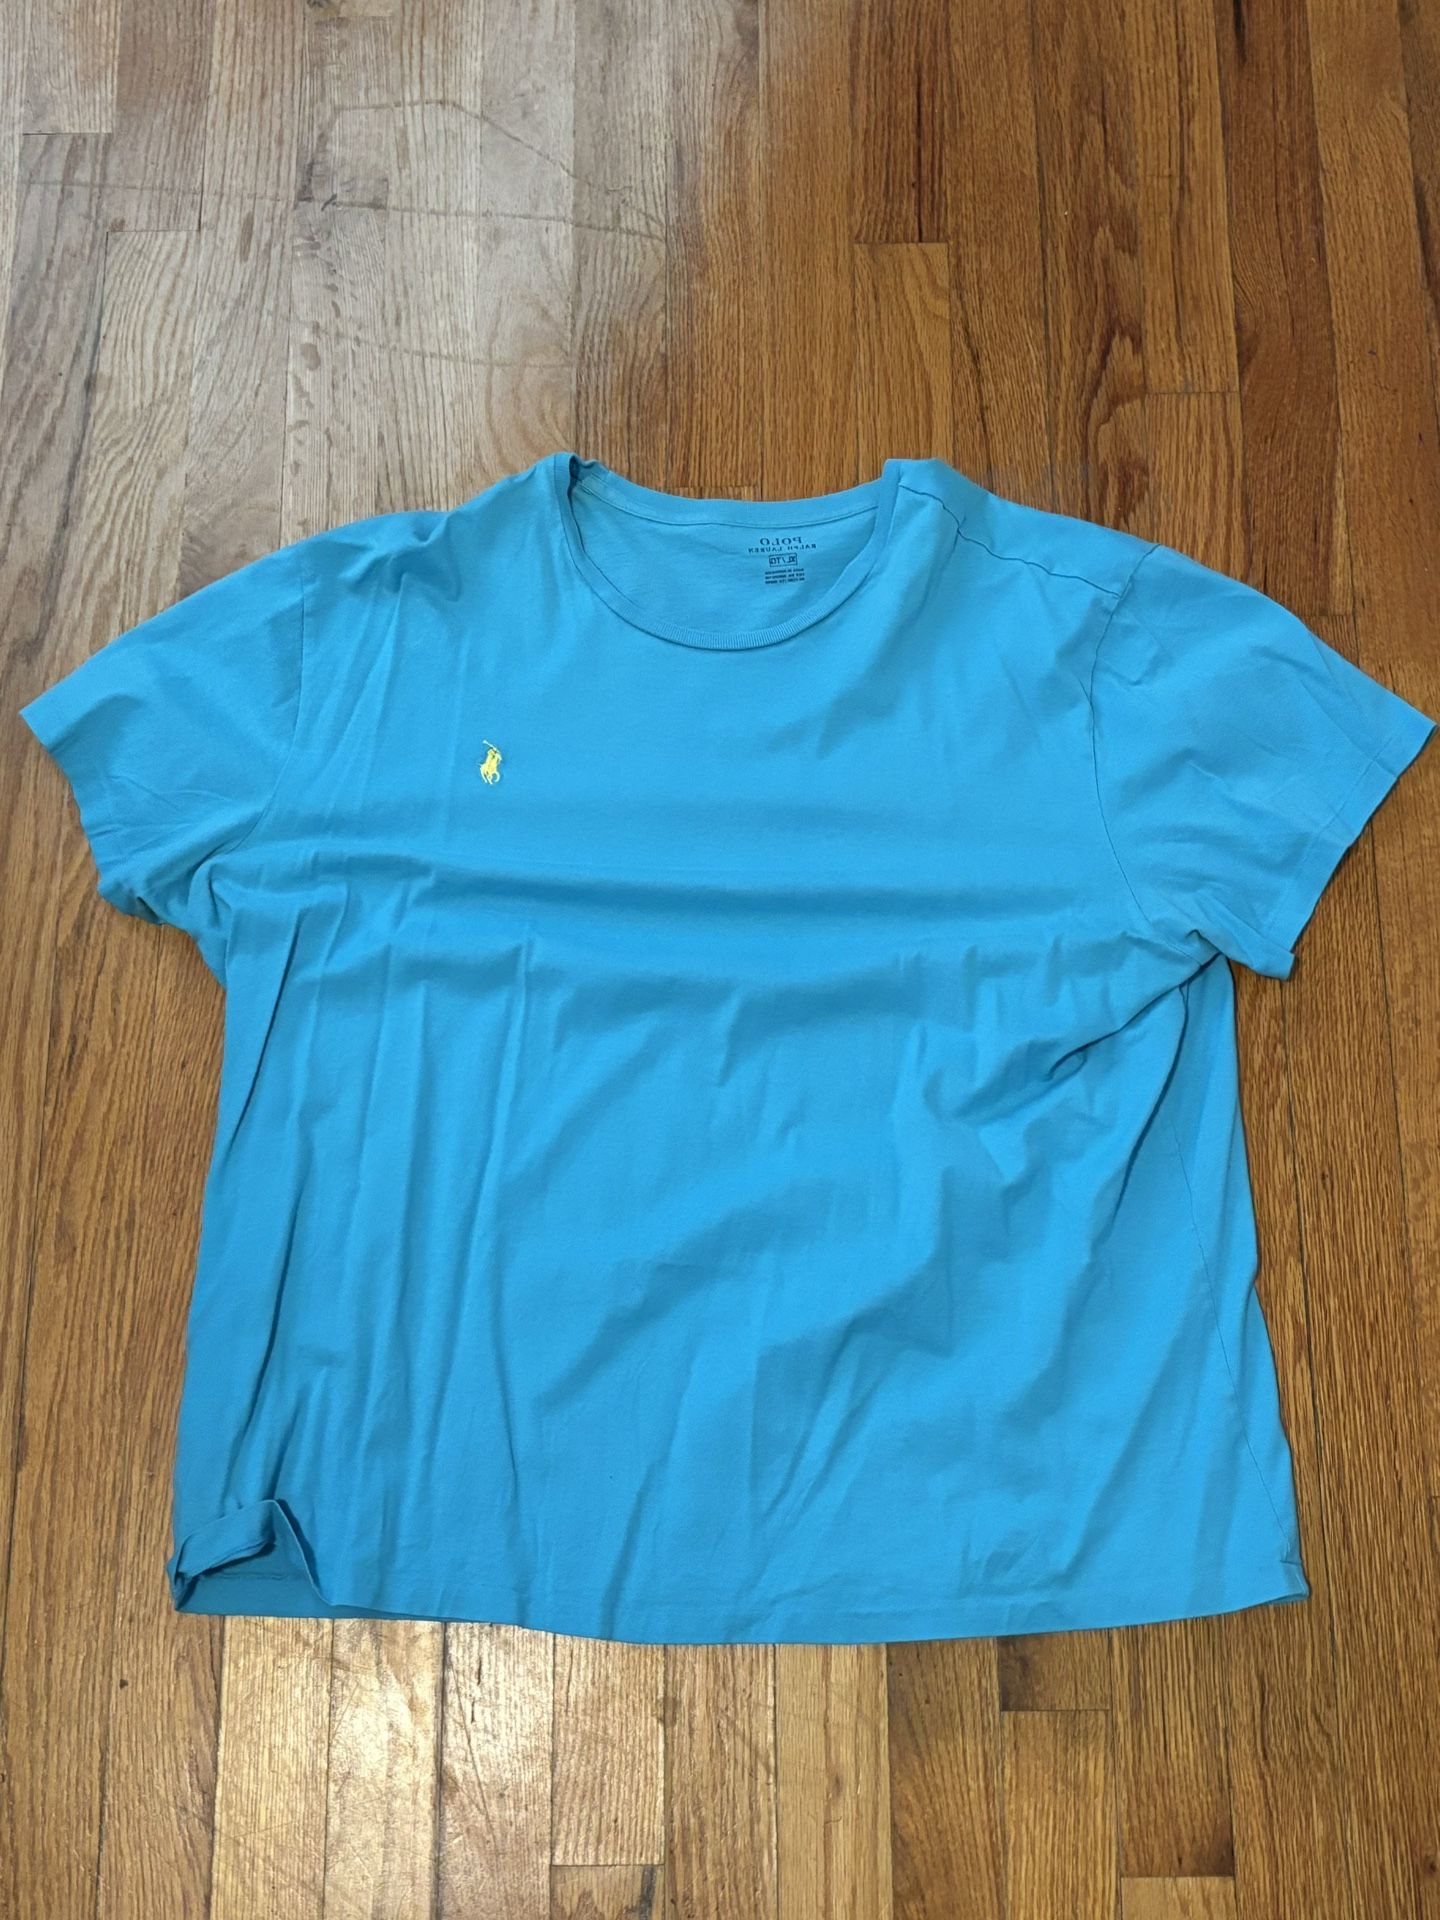 Blue Polo T-Shirt | XL